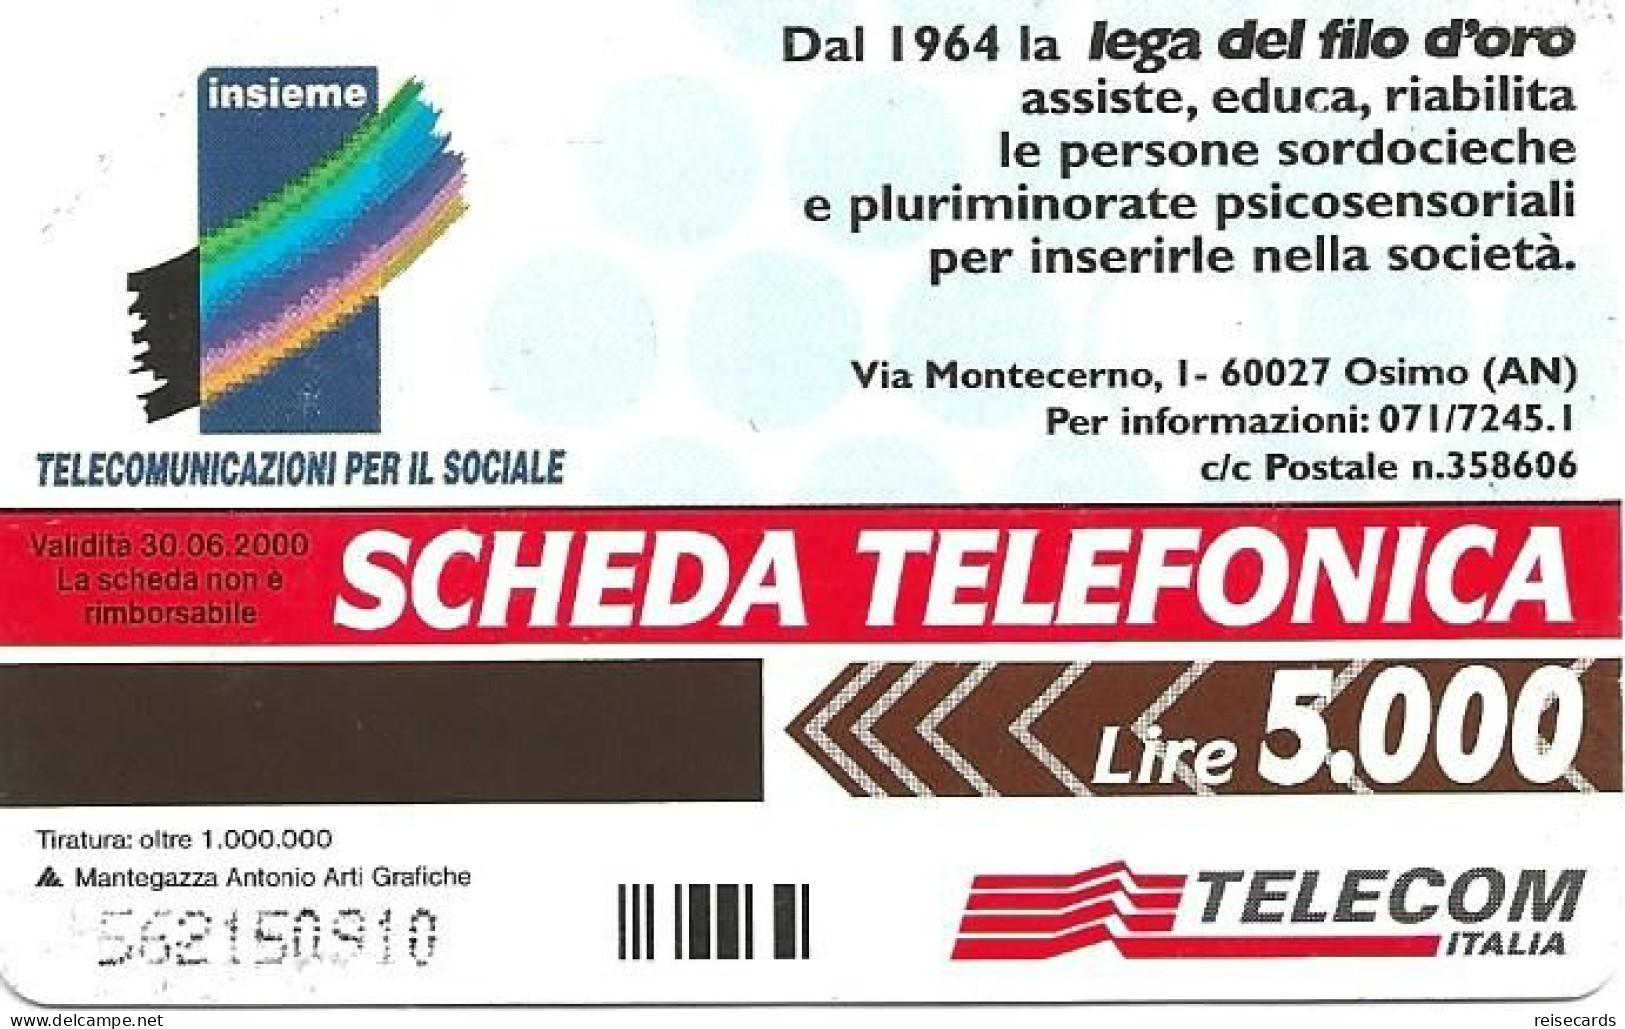 Italy: Telecom Italia - Lega Del Filo D'oro - Openbare Reclame